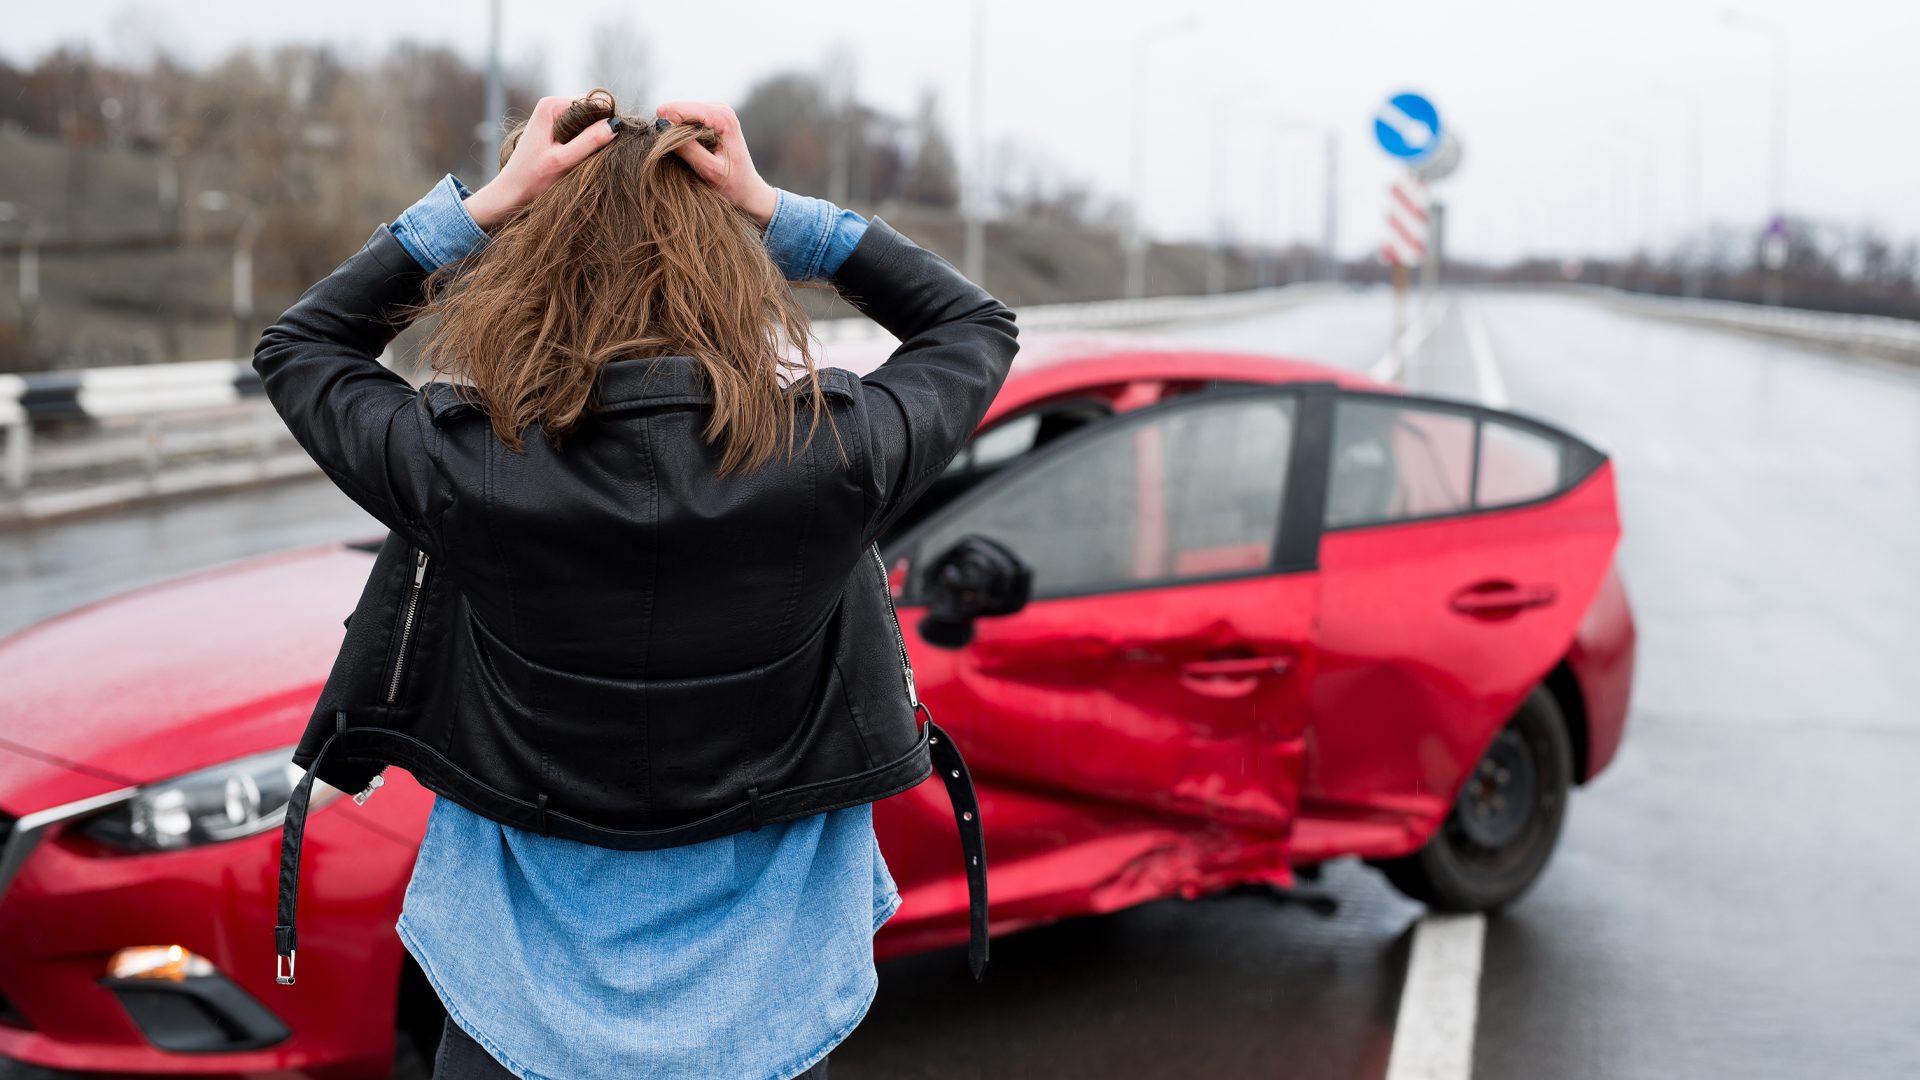 2021 Car Accident Statistics in Ohio